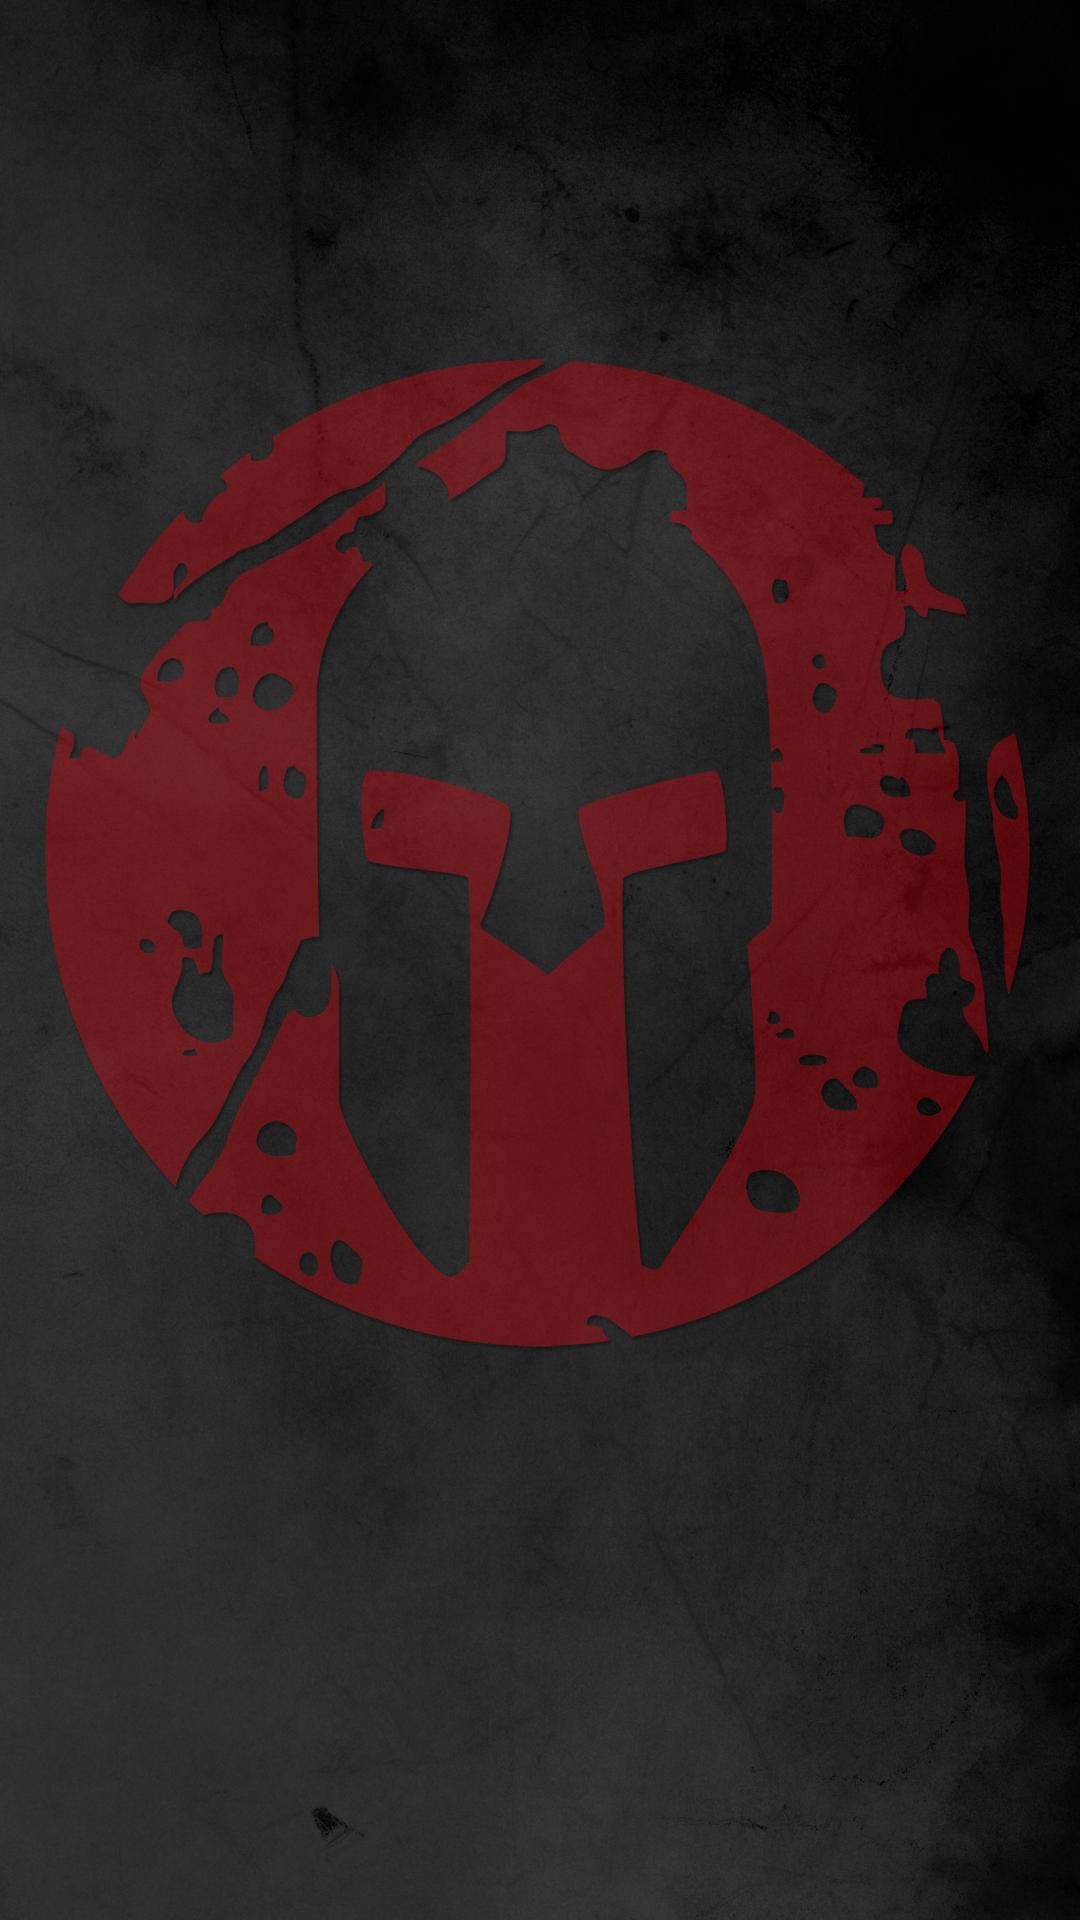 wallpaper sparta,red,t shirt,illustration,logo,symbol